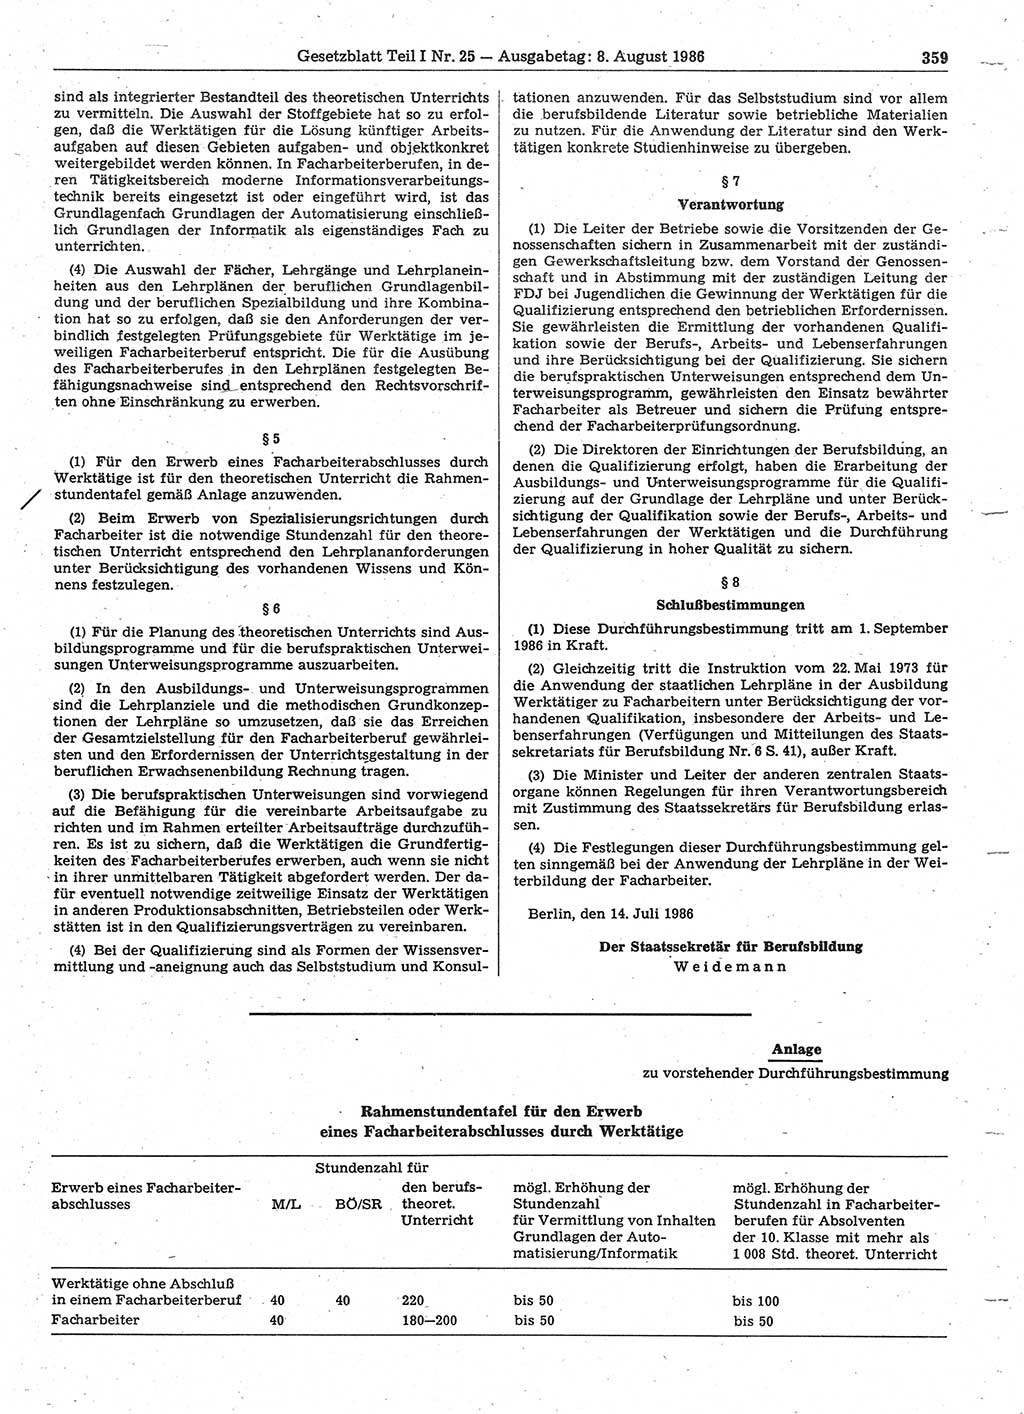 Gesetzblatt (GBl.) der Deutschen Demokratischen Republik (DDR) Teil Ⅰ 1986, Seite 359 (GBl. DDR Ⅰ 1986, S. 359)